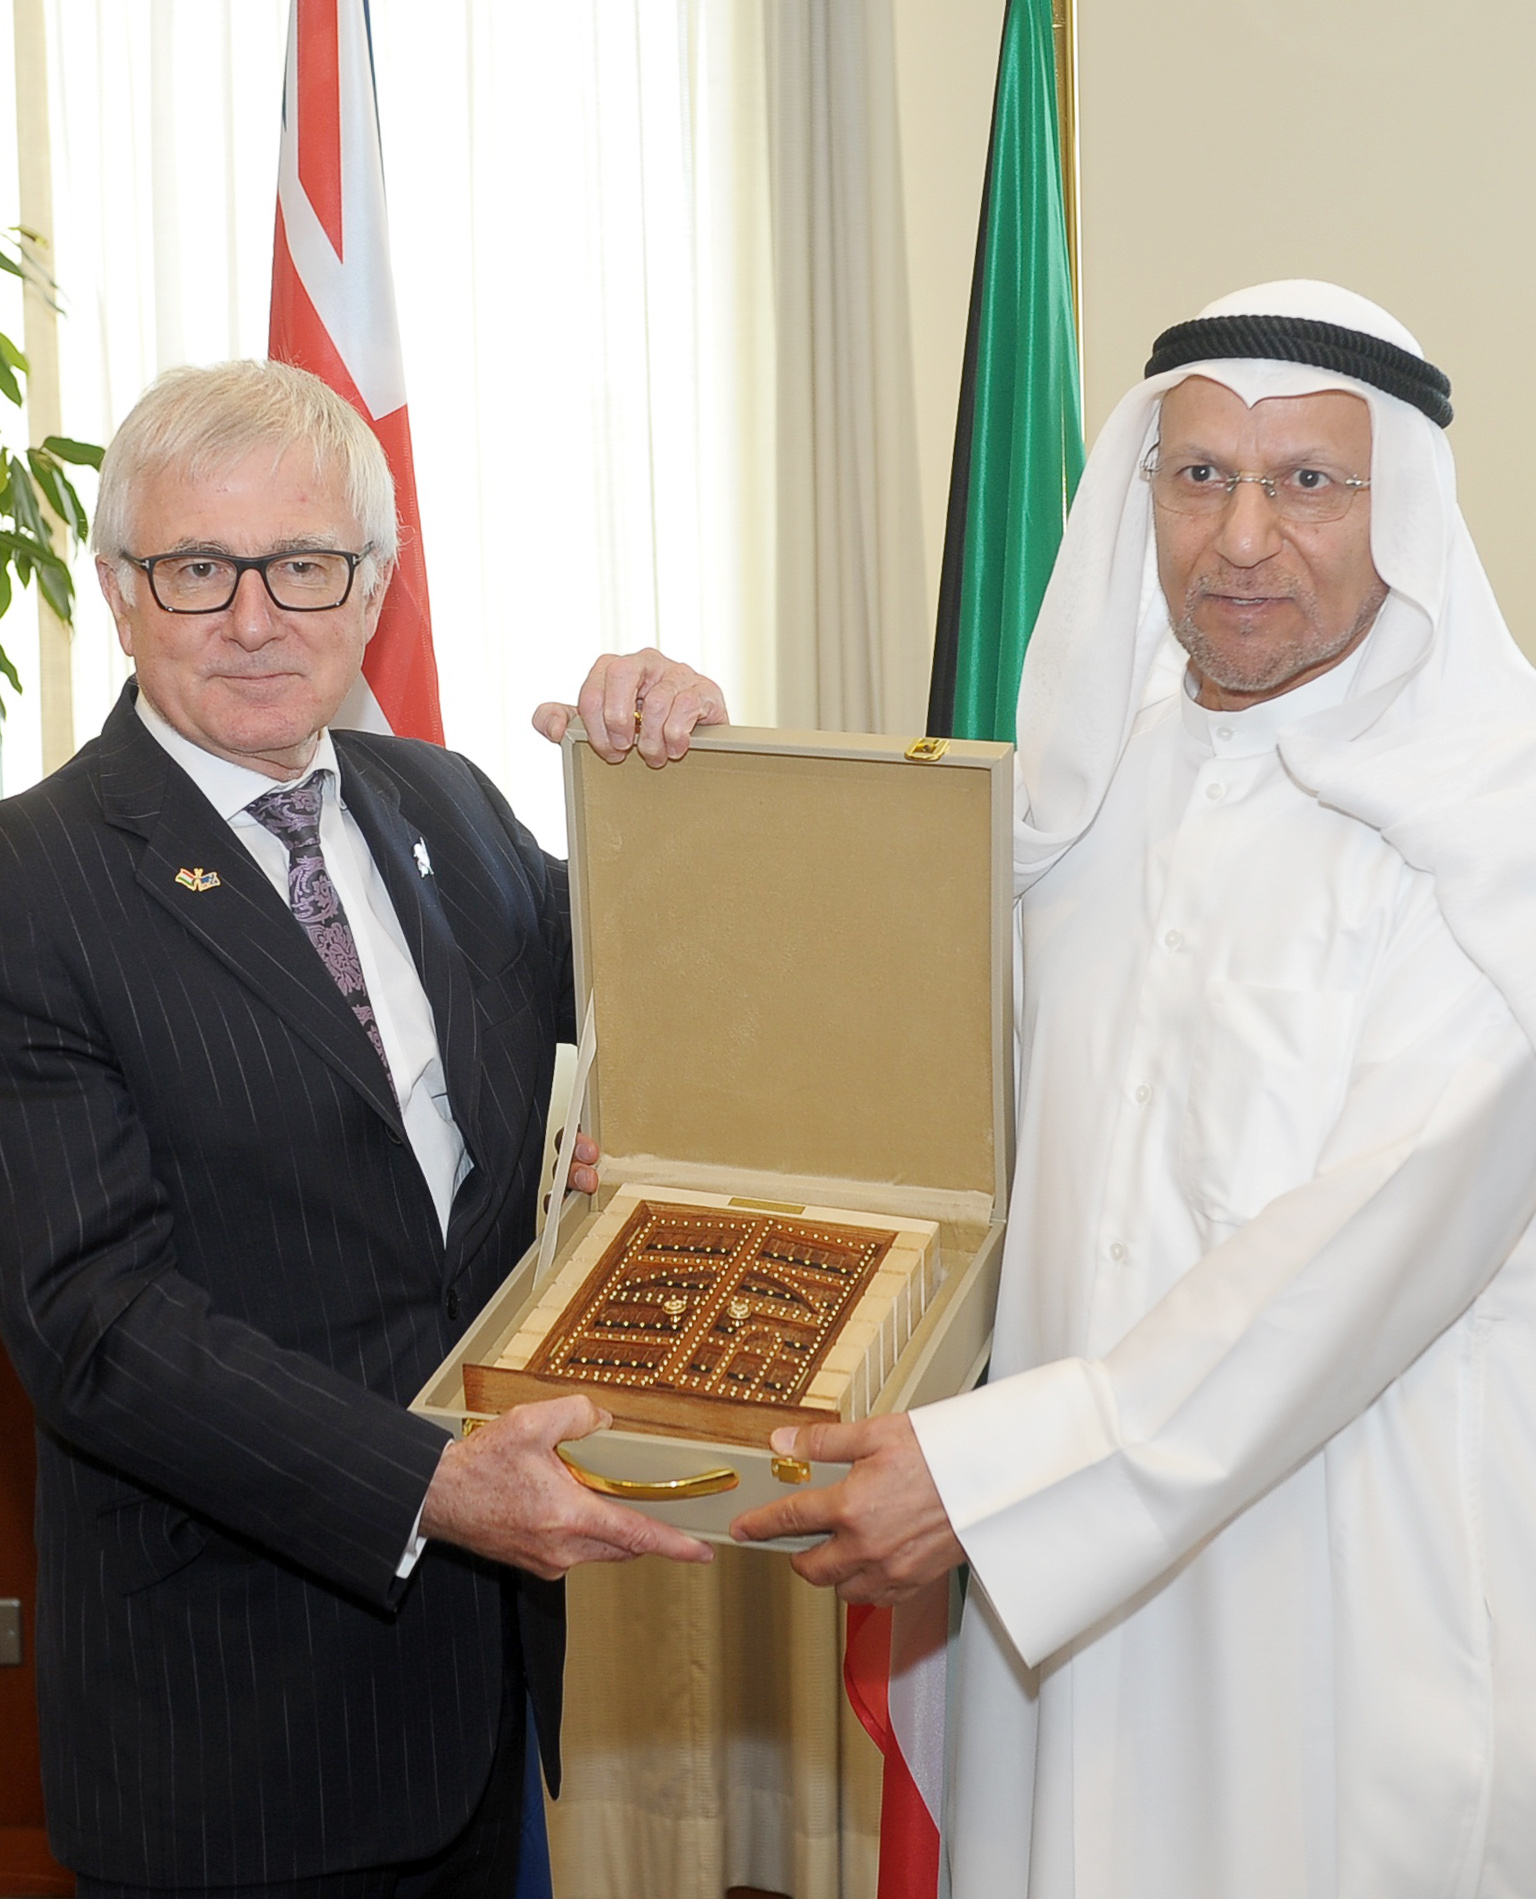 النائب الثاني لغرفة تجارة وصناعة الكويت عبد الوهاب الوزان يكرم  وزير التجارة النيوزيلندي تيم جروسر